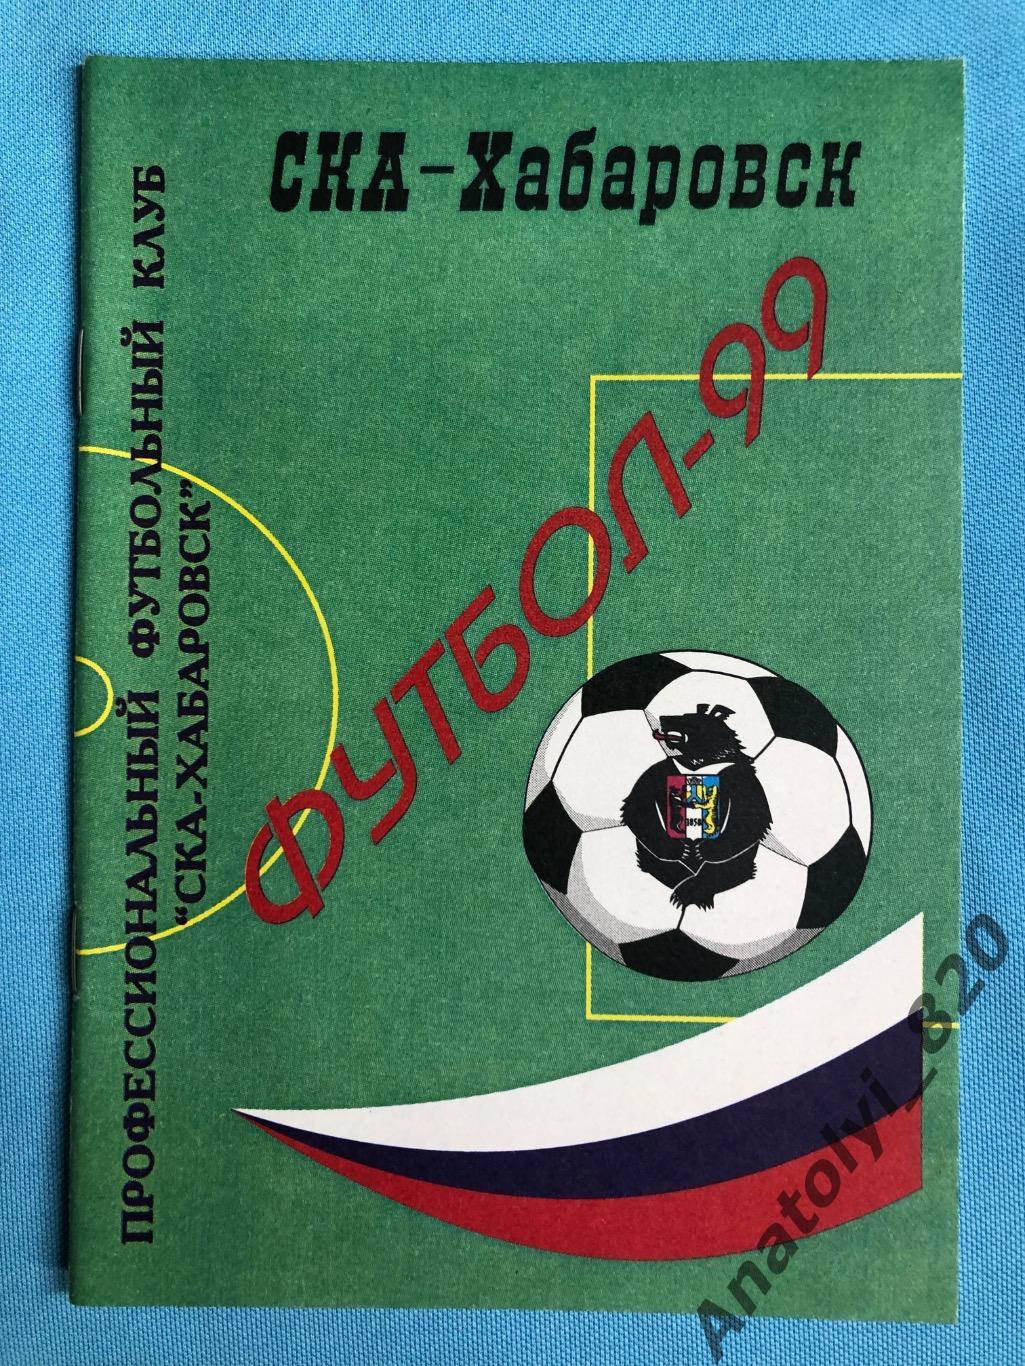 СКА Хабаровск 1999 год календарь - справочник